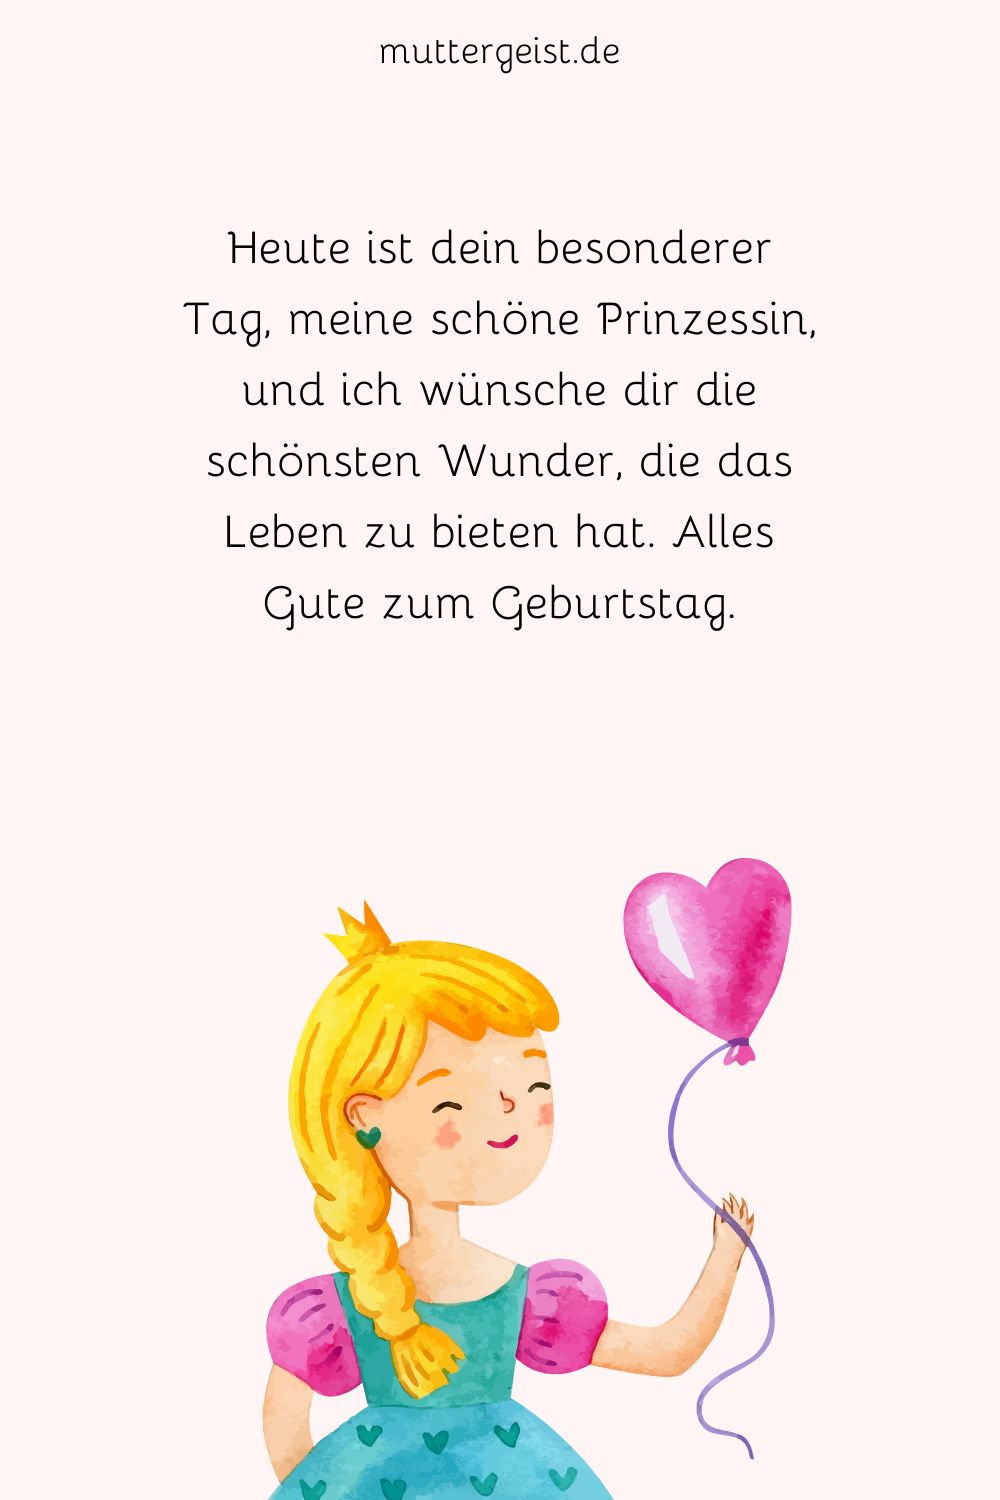 Geburtstagskarte mit einer Zeichnung einer süßen Prinzessin